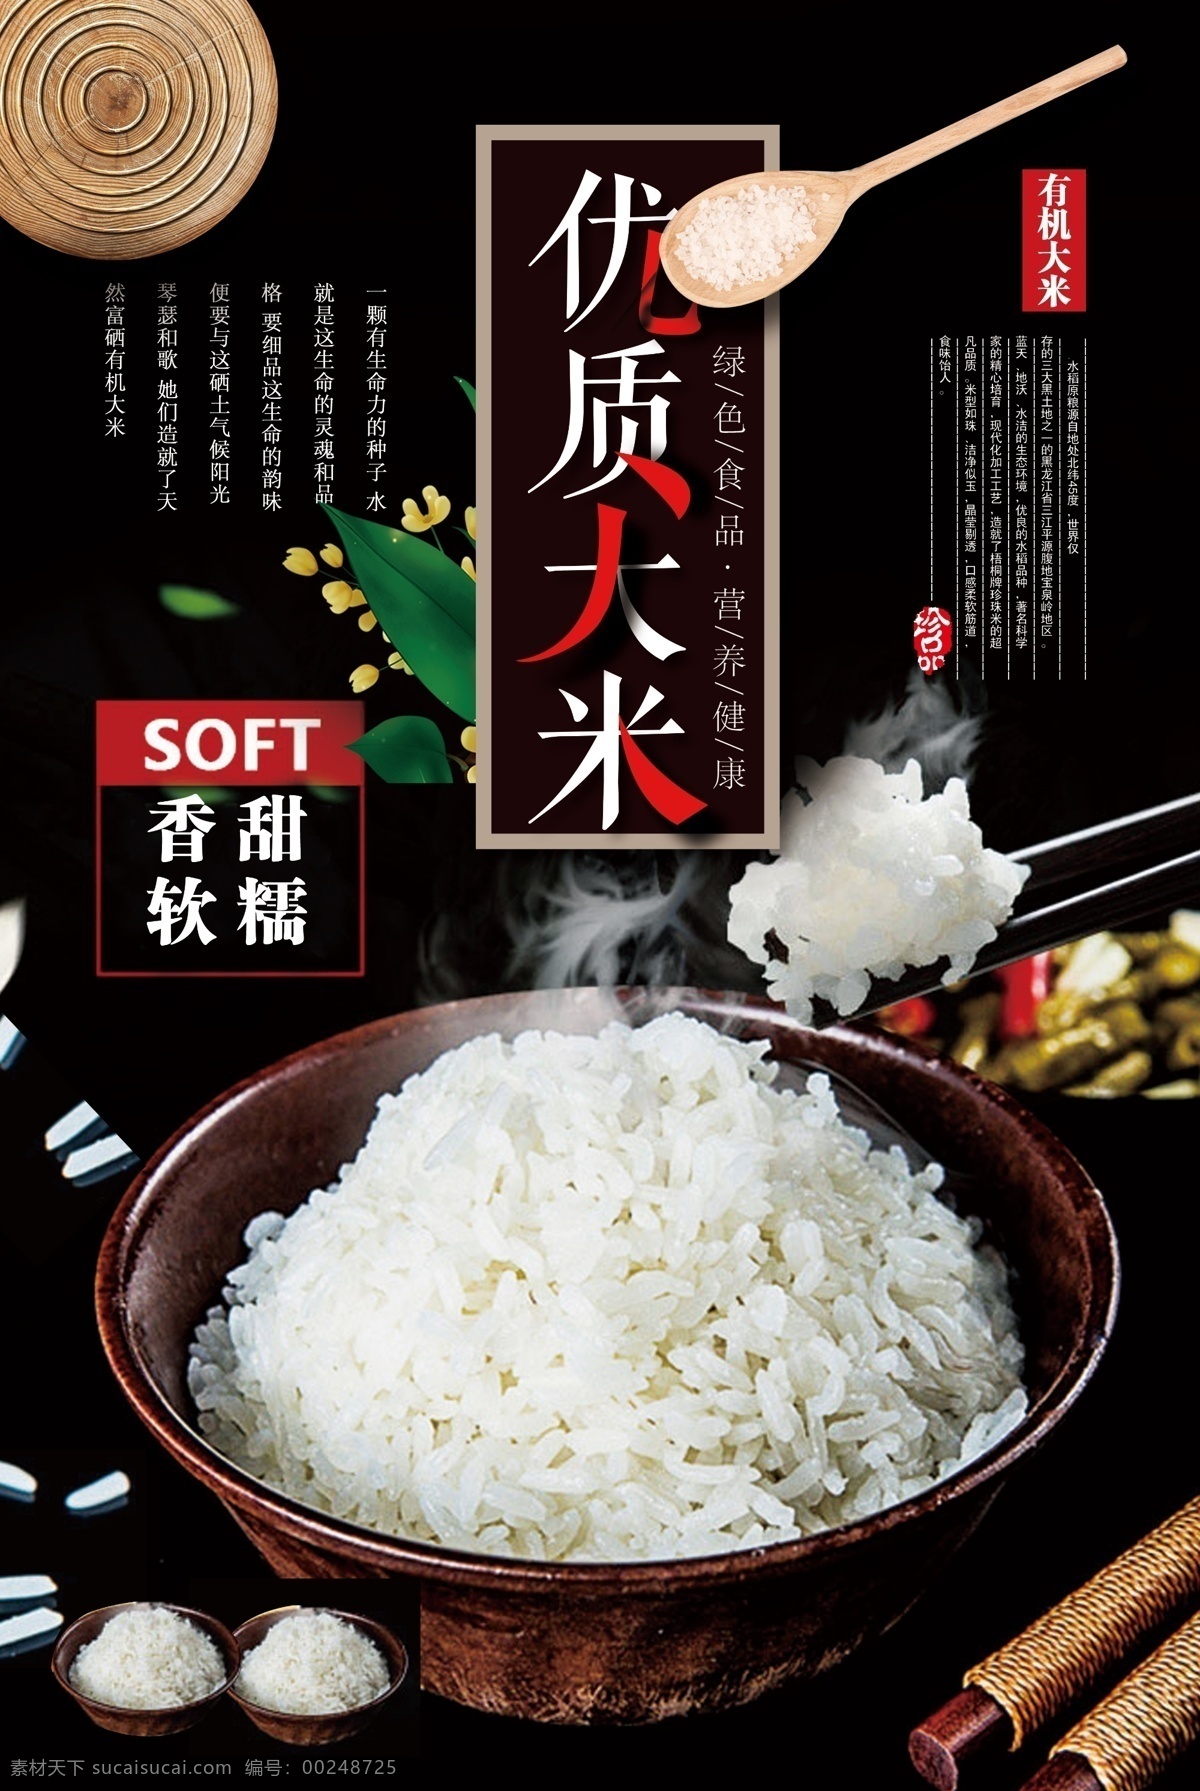 有机 优选 大米 宣传海报 米饭 水稻 超市促销 稻田 绿色 米店海报 有机种植 现磨现卖 有机大米 粮食 优质大米 免费模版